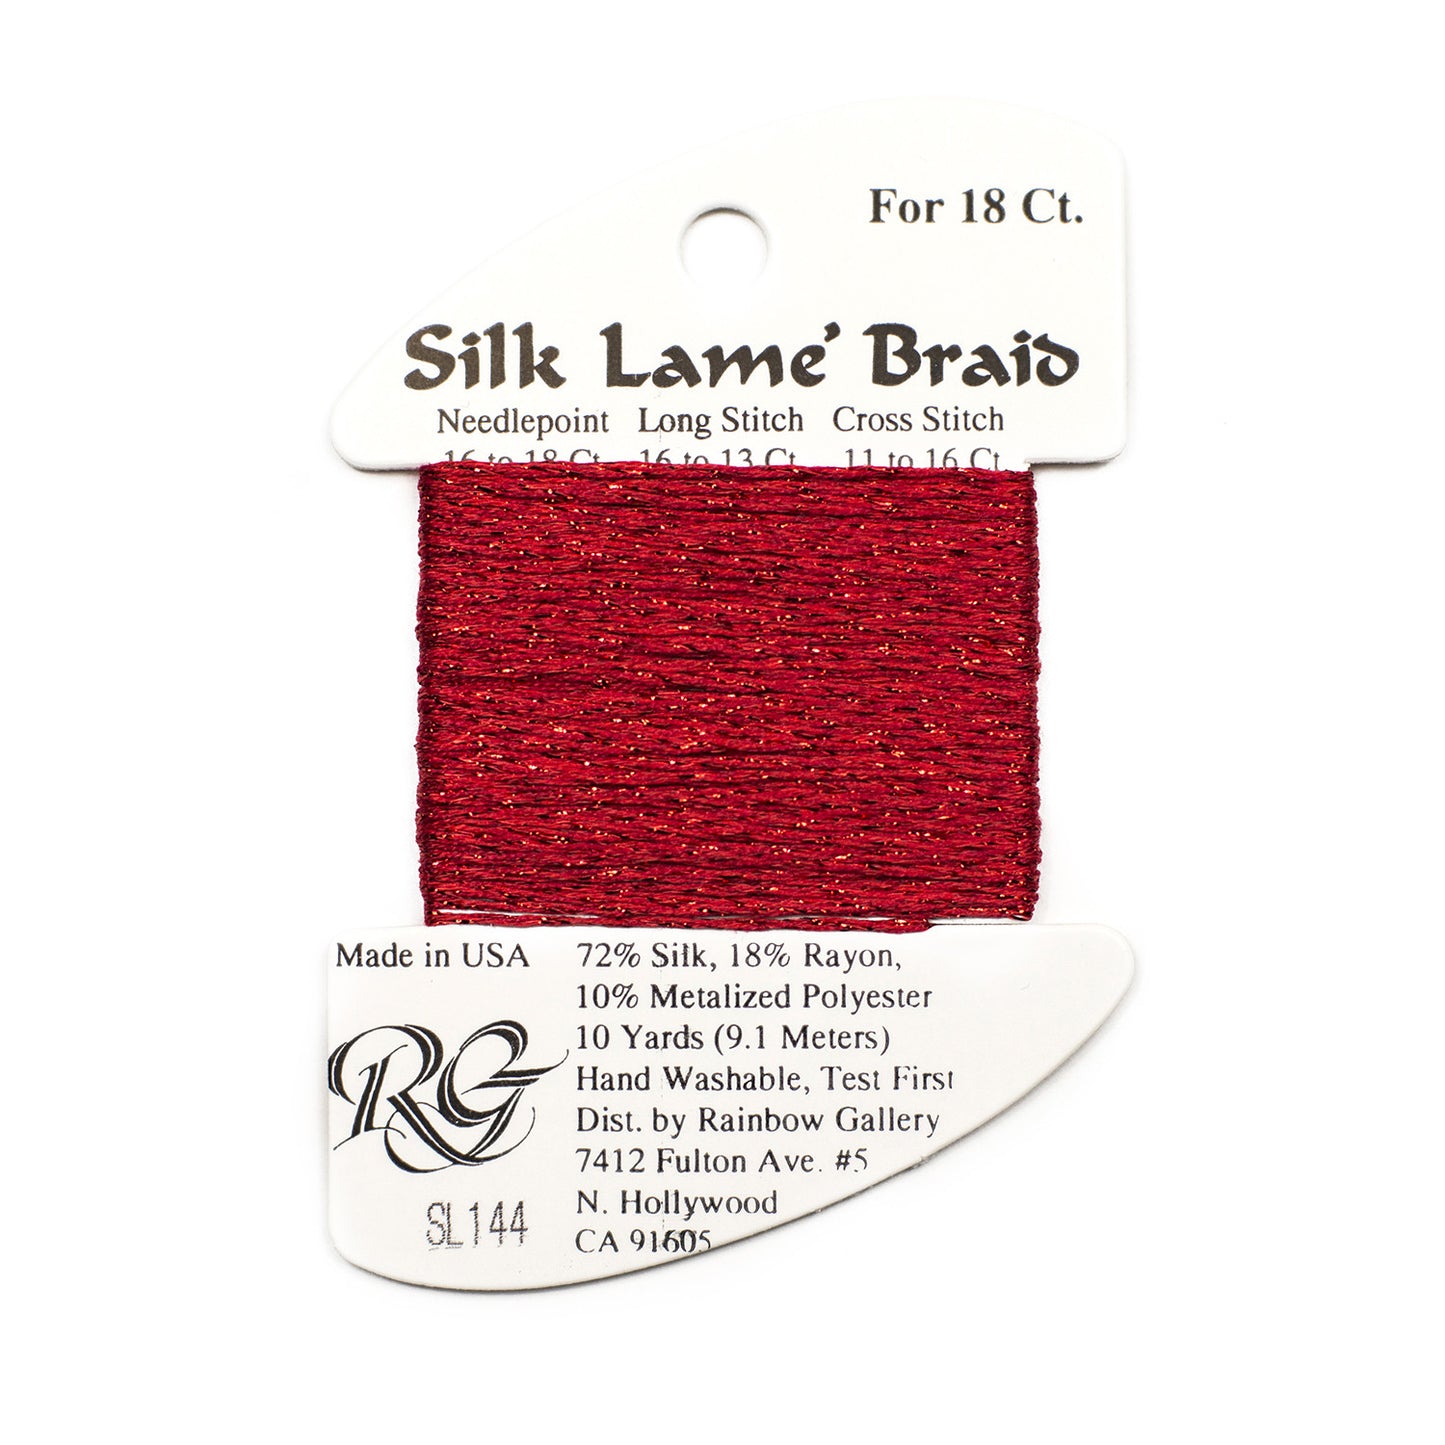 Silk Lame Braid